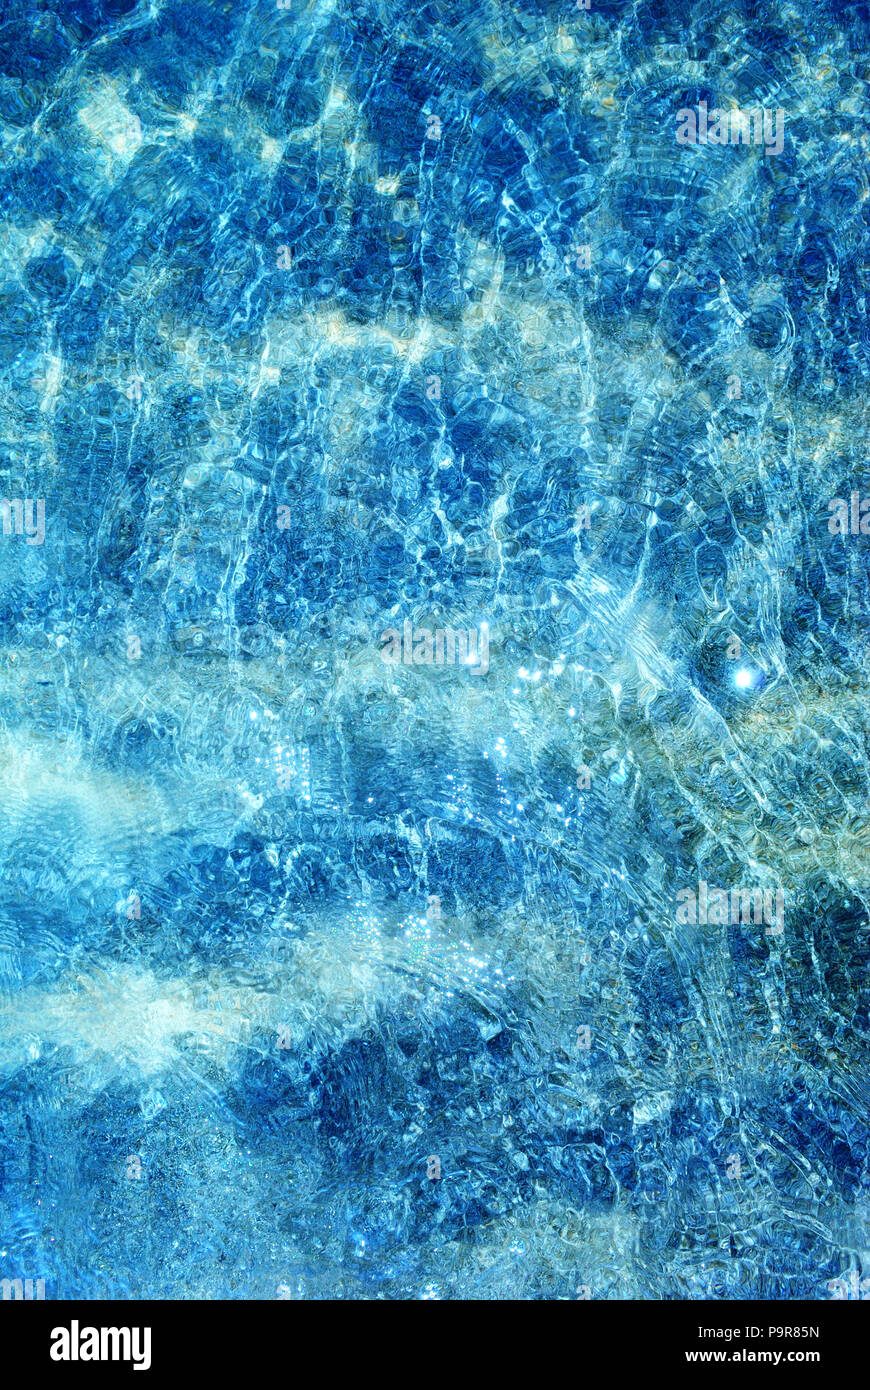 Sommer minimalistischen Hintergrund, Meer mit kristallklarem, blauen und glitzernden Wasser von oben, vertikal Stockfoto